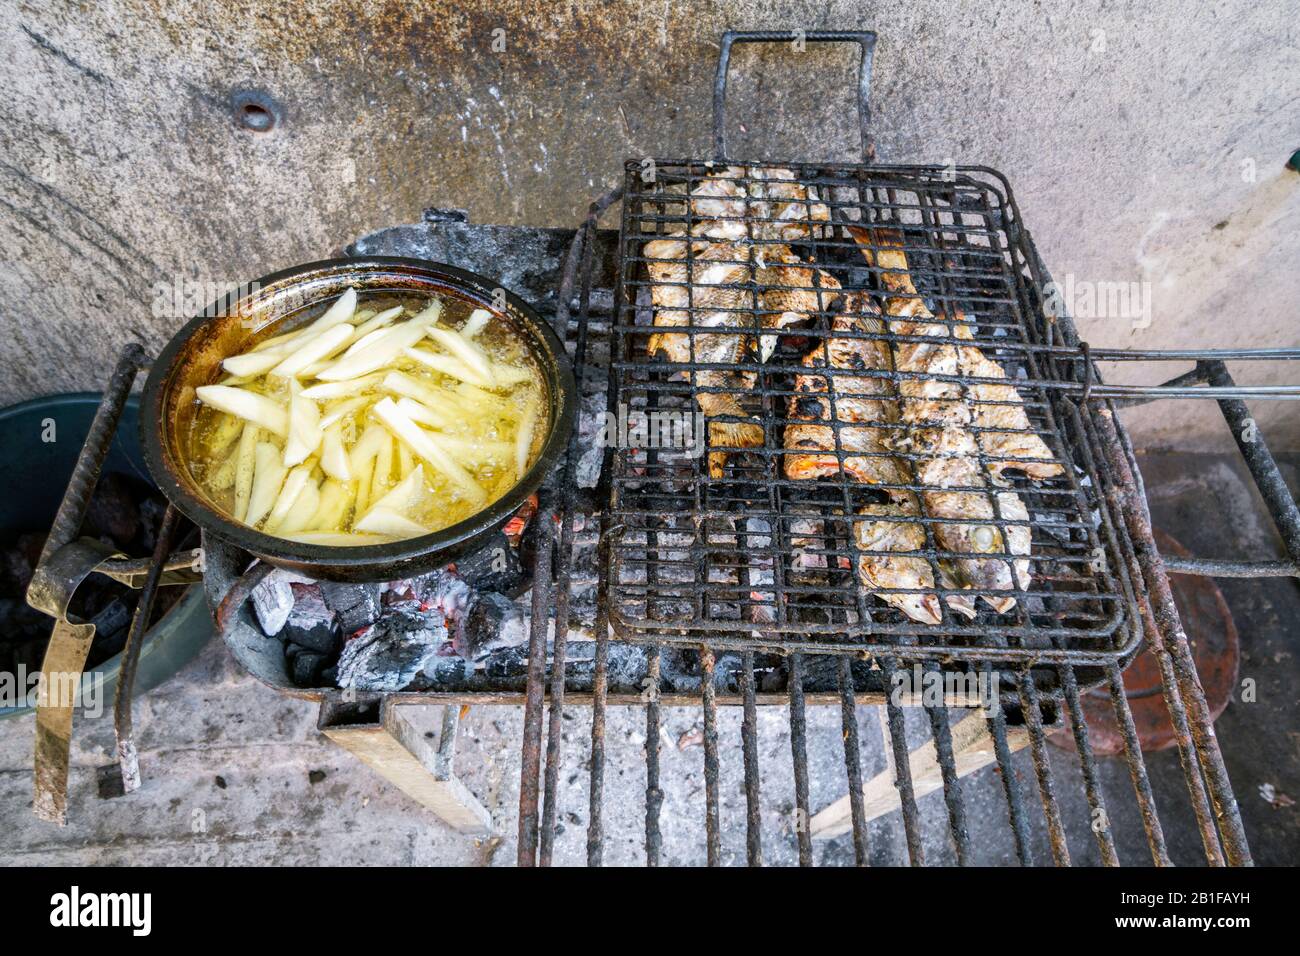 Le poisson grillé et la friture des frites au charbon de bois - une façon simple de cuisiner au Mozambique, en Afrique Banque D'Images